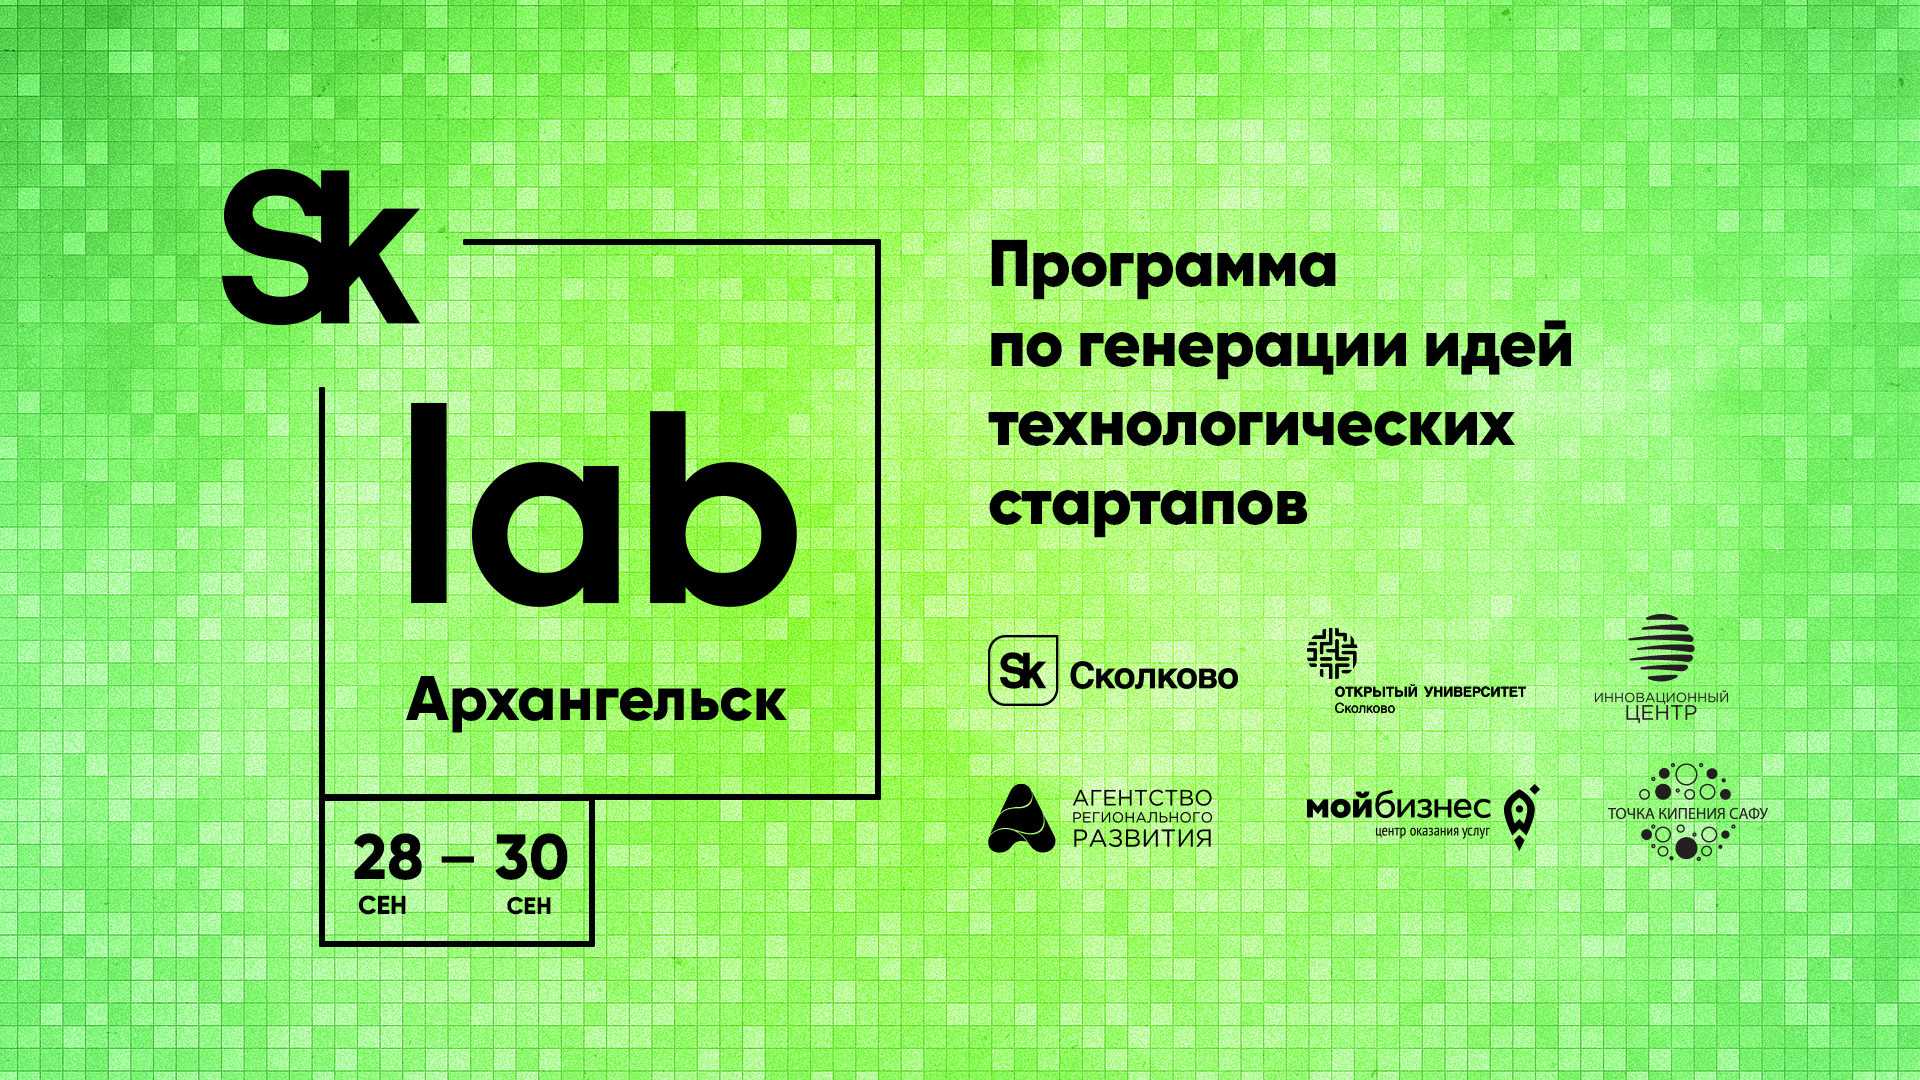  Лаборатория по генерации идей  технологических стартапов SkLab  пройдет в Архангельске